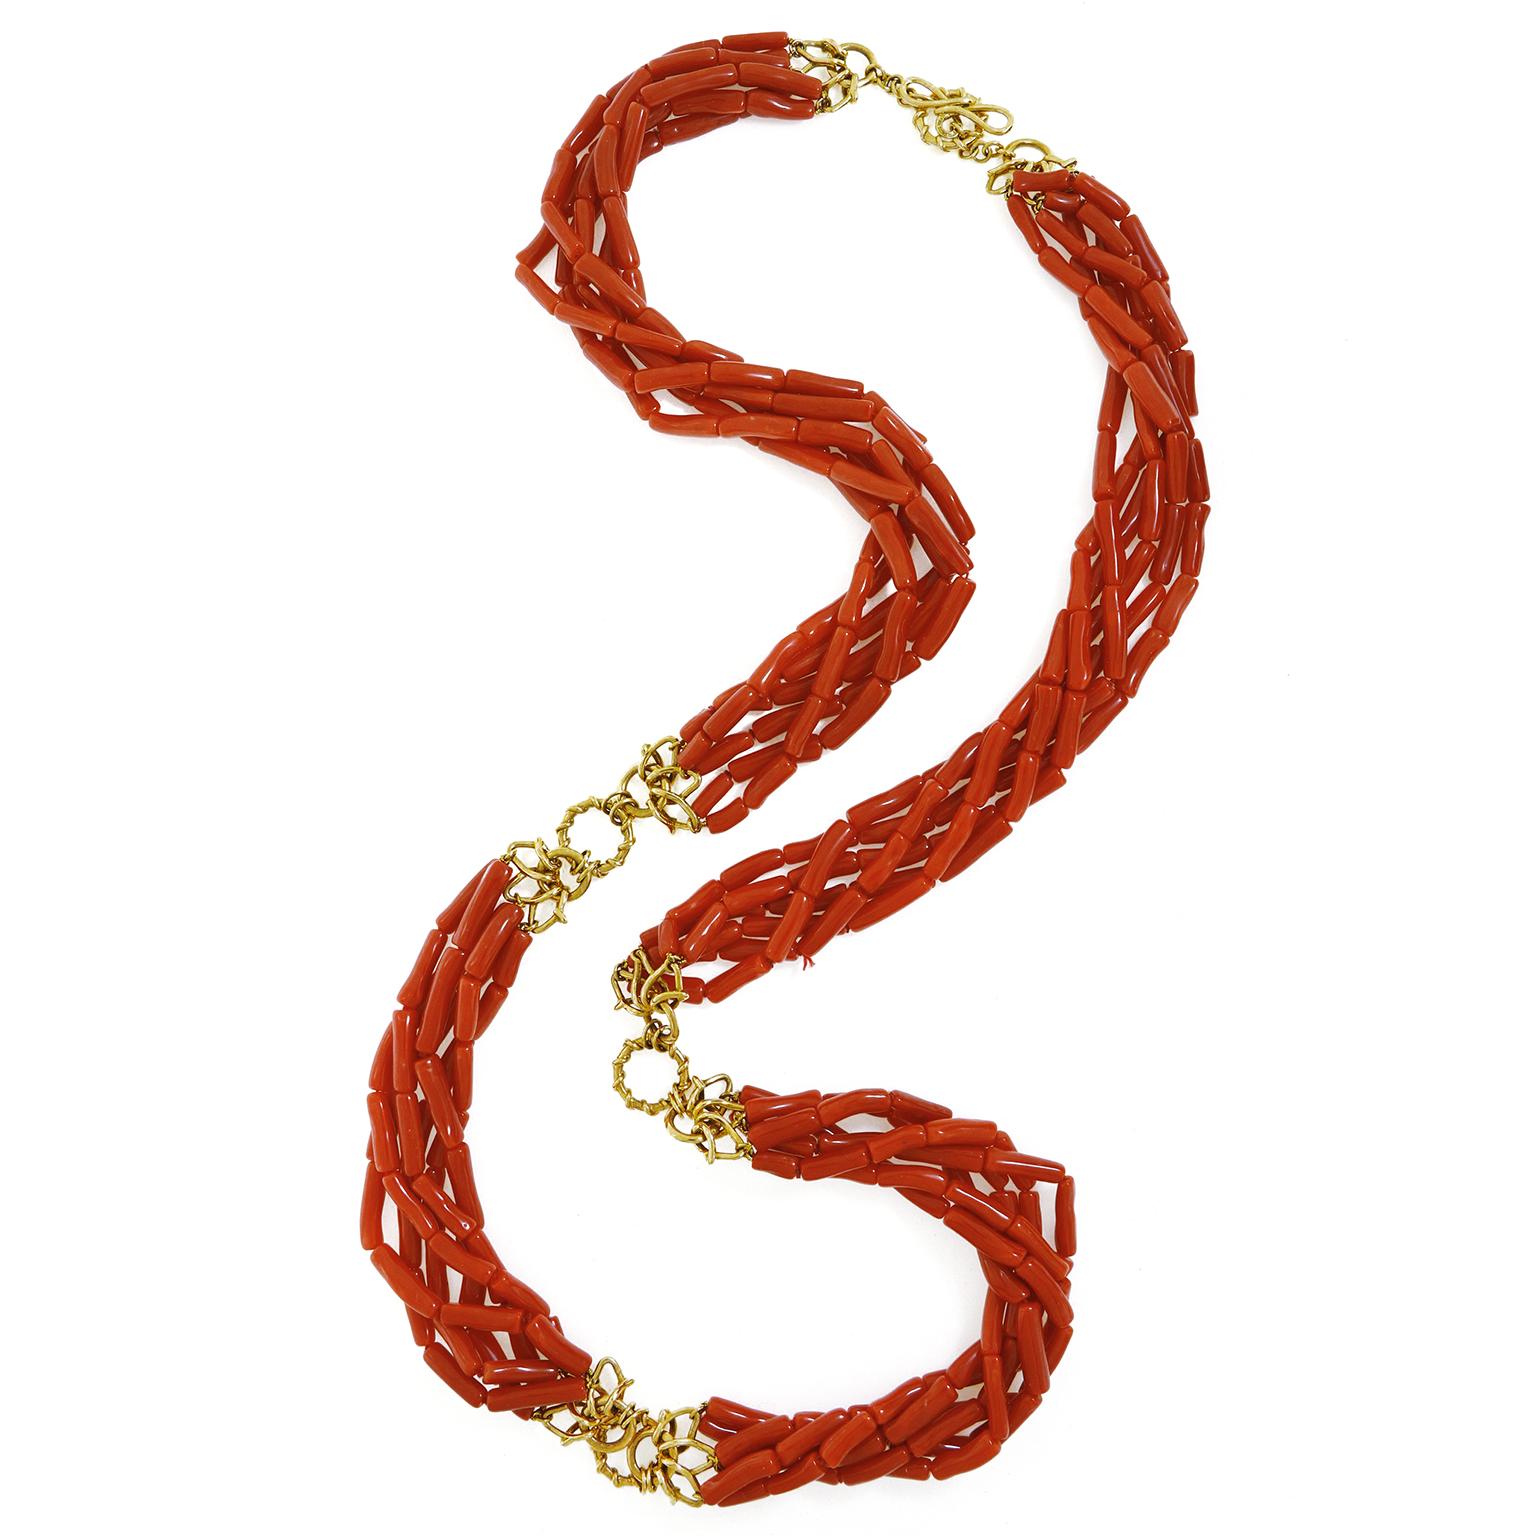 Diese Halskette besteht aus auffälligen roten Korallen, die in zylinderförmige Perlen geschnitzt sind. Die 6 Stränge sind zu einem Torso gedreht, was einen einzigartigen Look ergibt. Drei Vs aus 18 Karat Gelbgold befinden sich an beiden Enden der